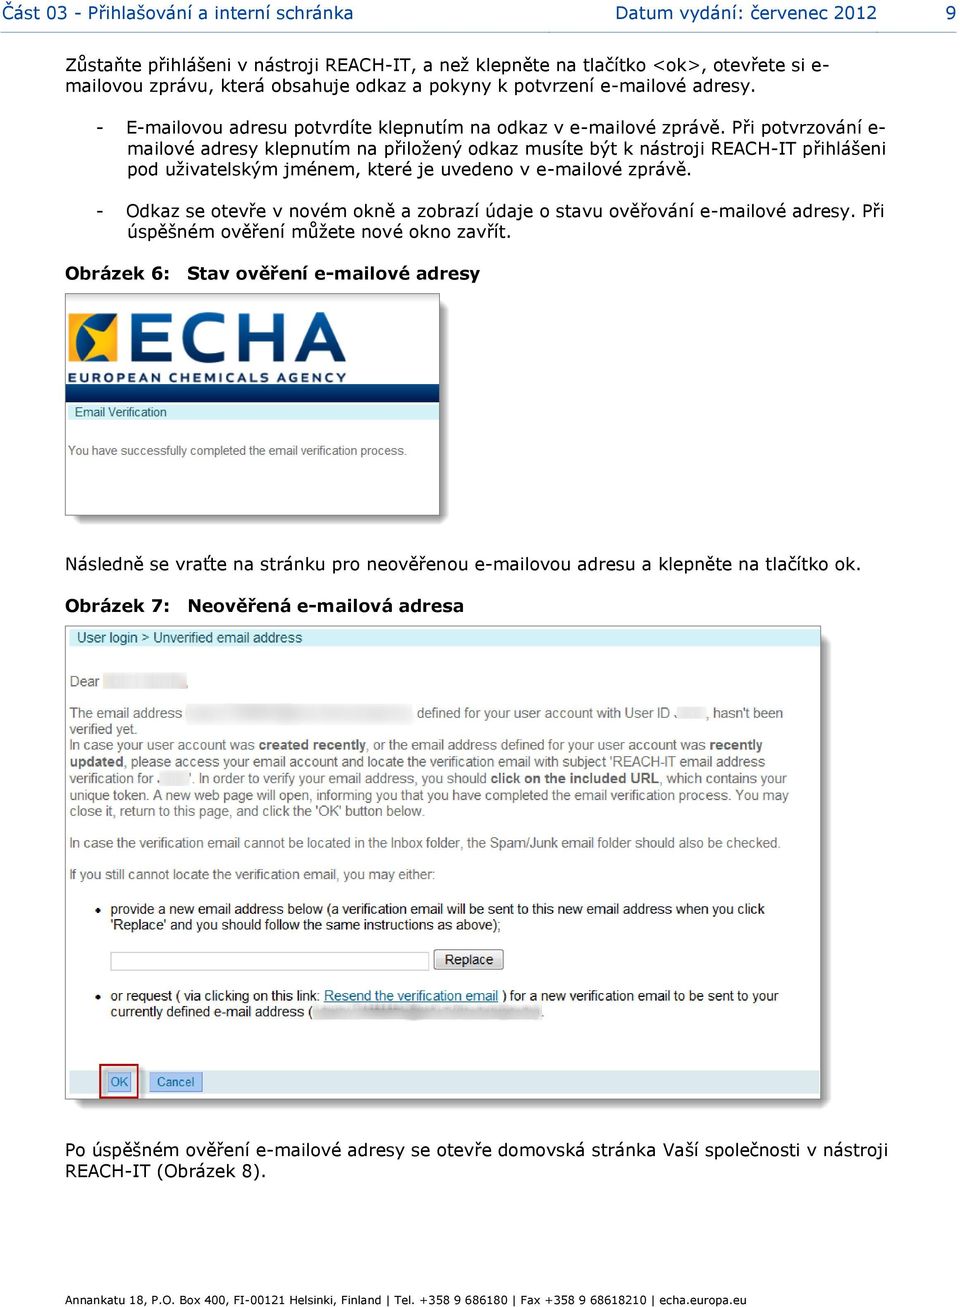 Při potvrzování e- mailové adresy klepnutím na přiložený odkaz musíte být k nástroji REACH-IT přihlášeni pod uživatelským jménem, které je uvedeno v e-mailové zprávě.